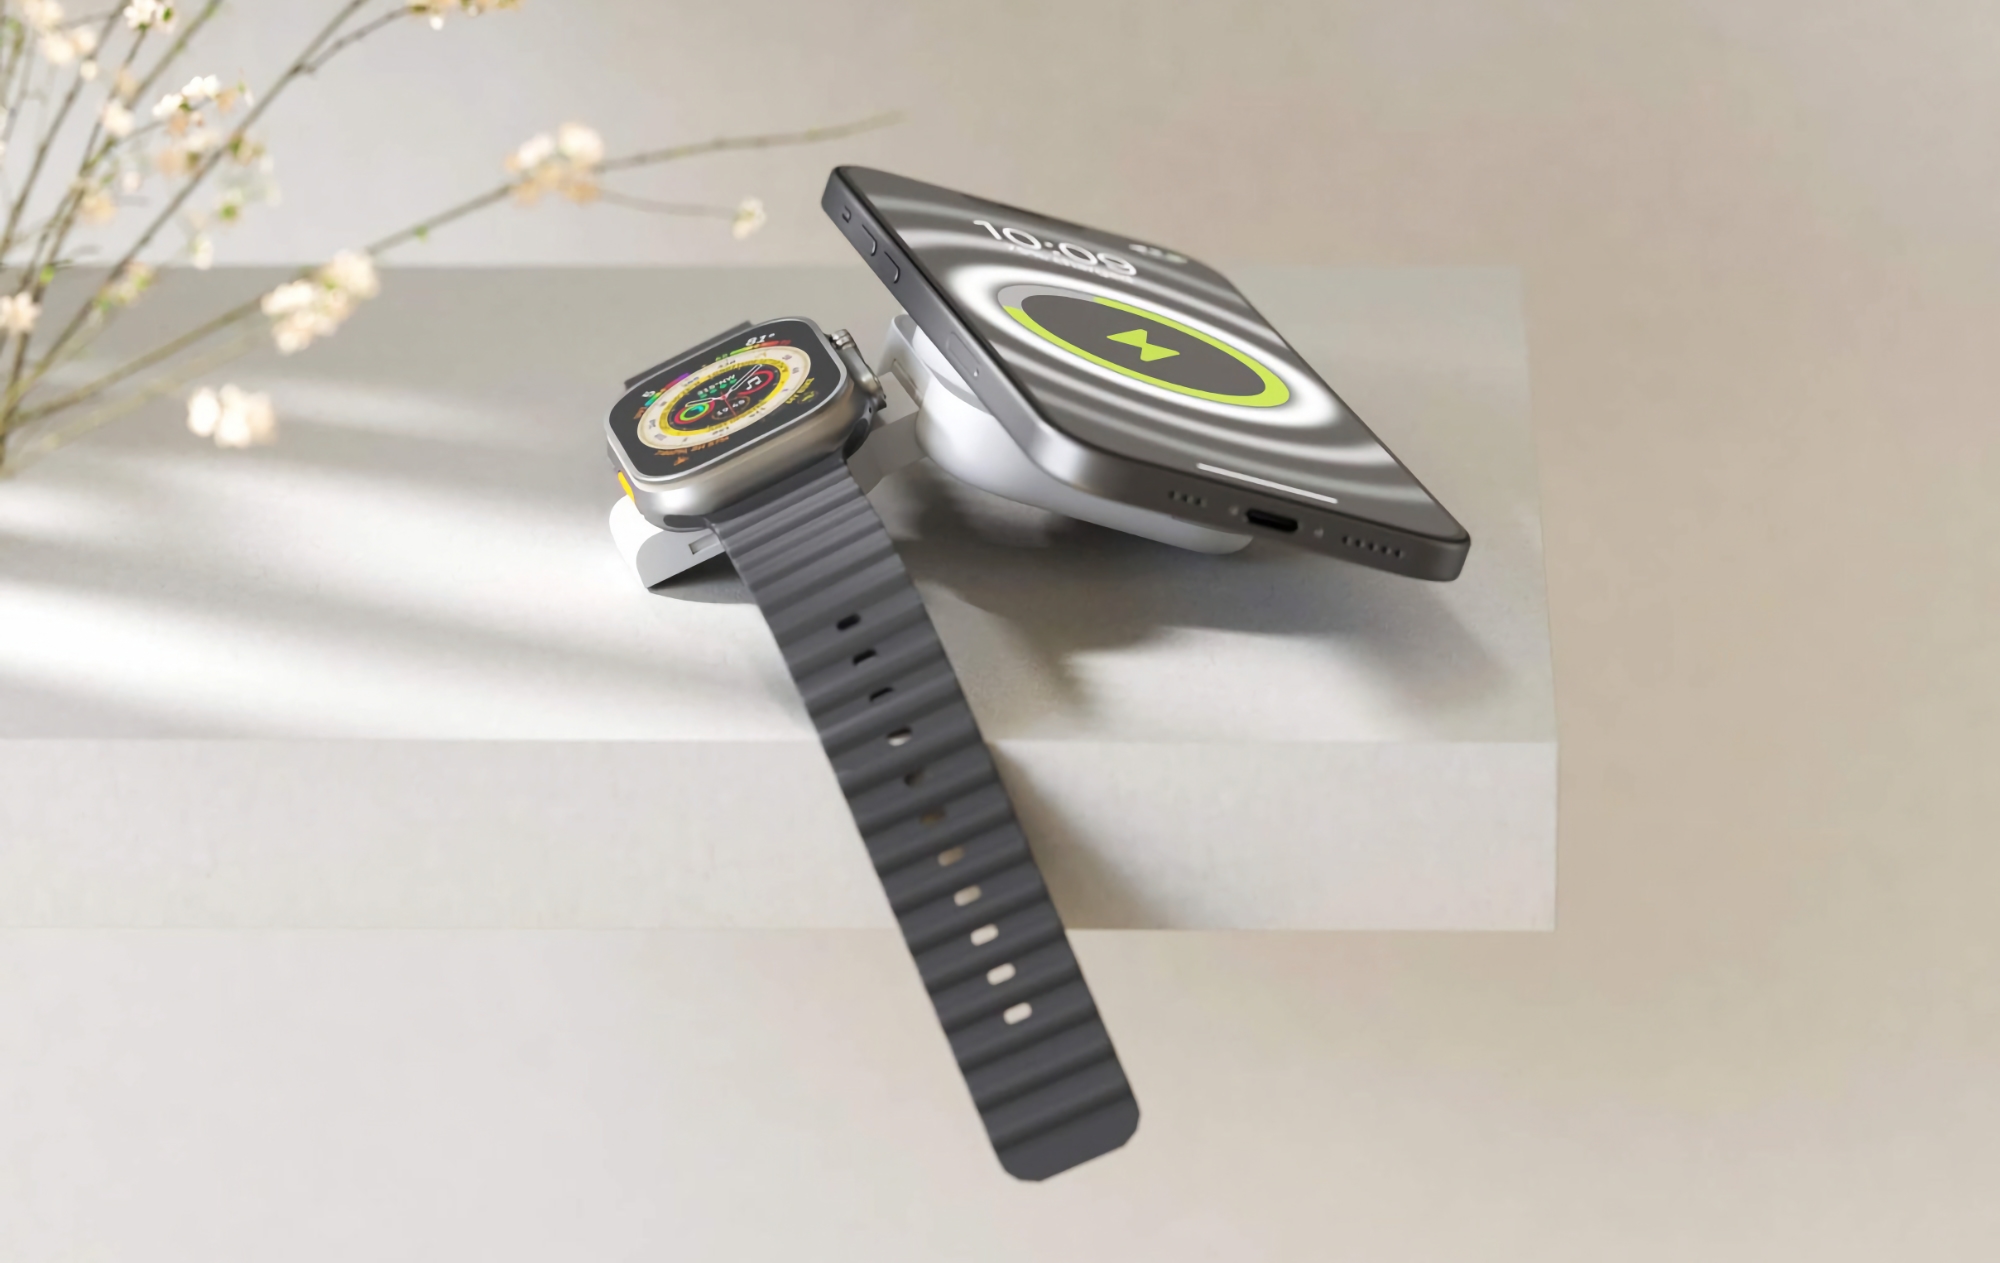 Zens zaprezentował kompaktową ładowarkę MagSafe dla iPhone'a i Apple Watcha